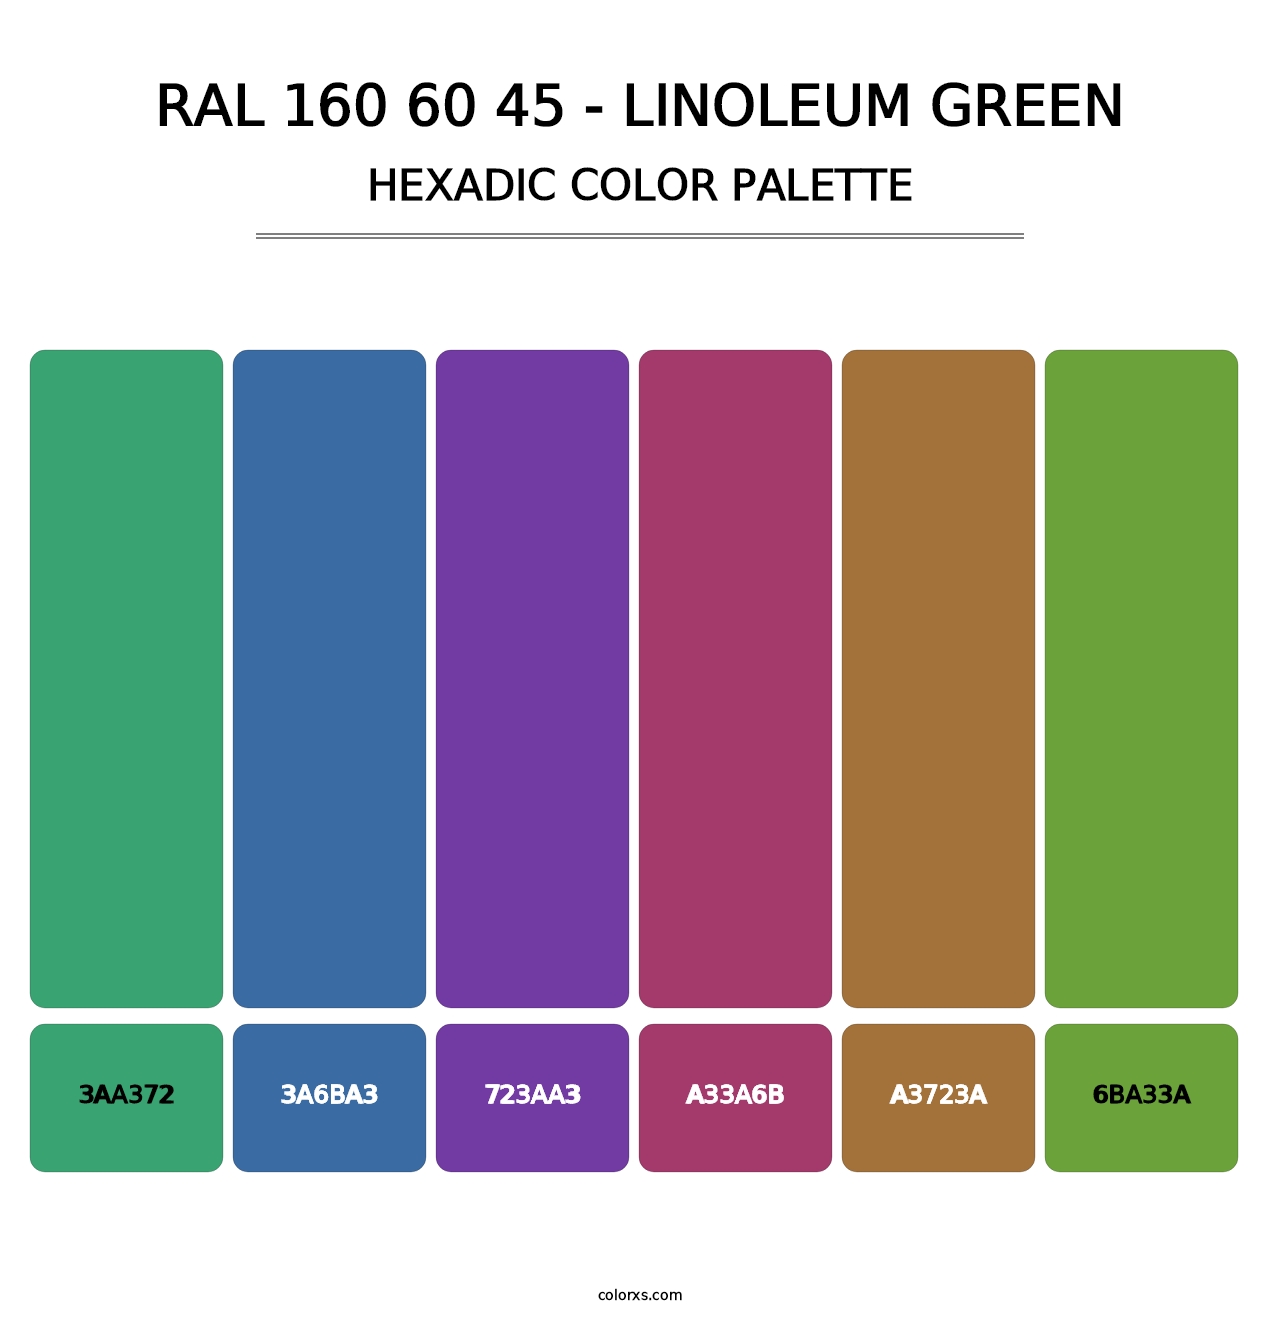 RAL 160 60 45 - Linoleum Green - Hexadic Color Palette